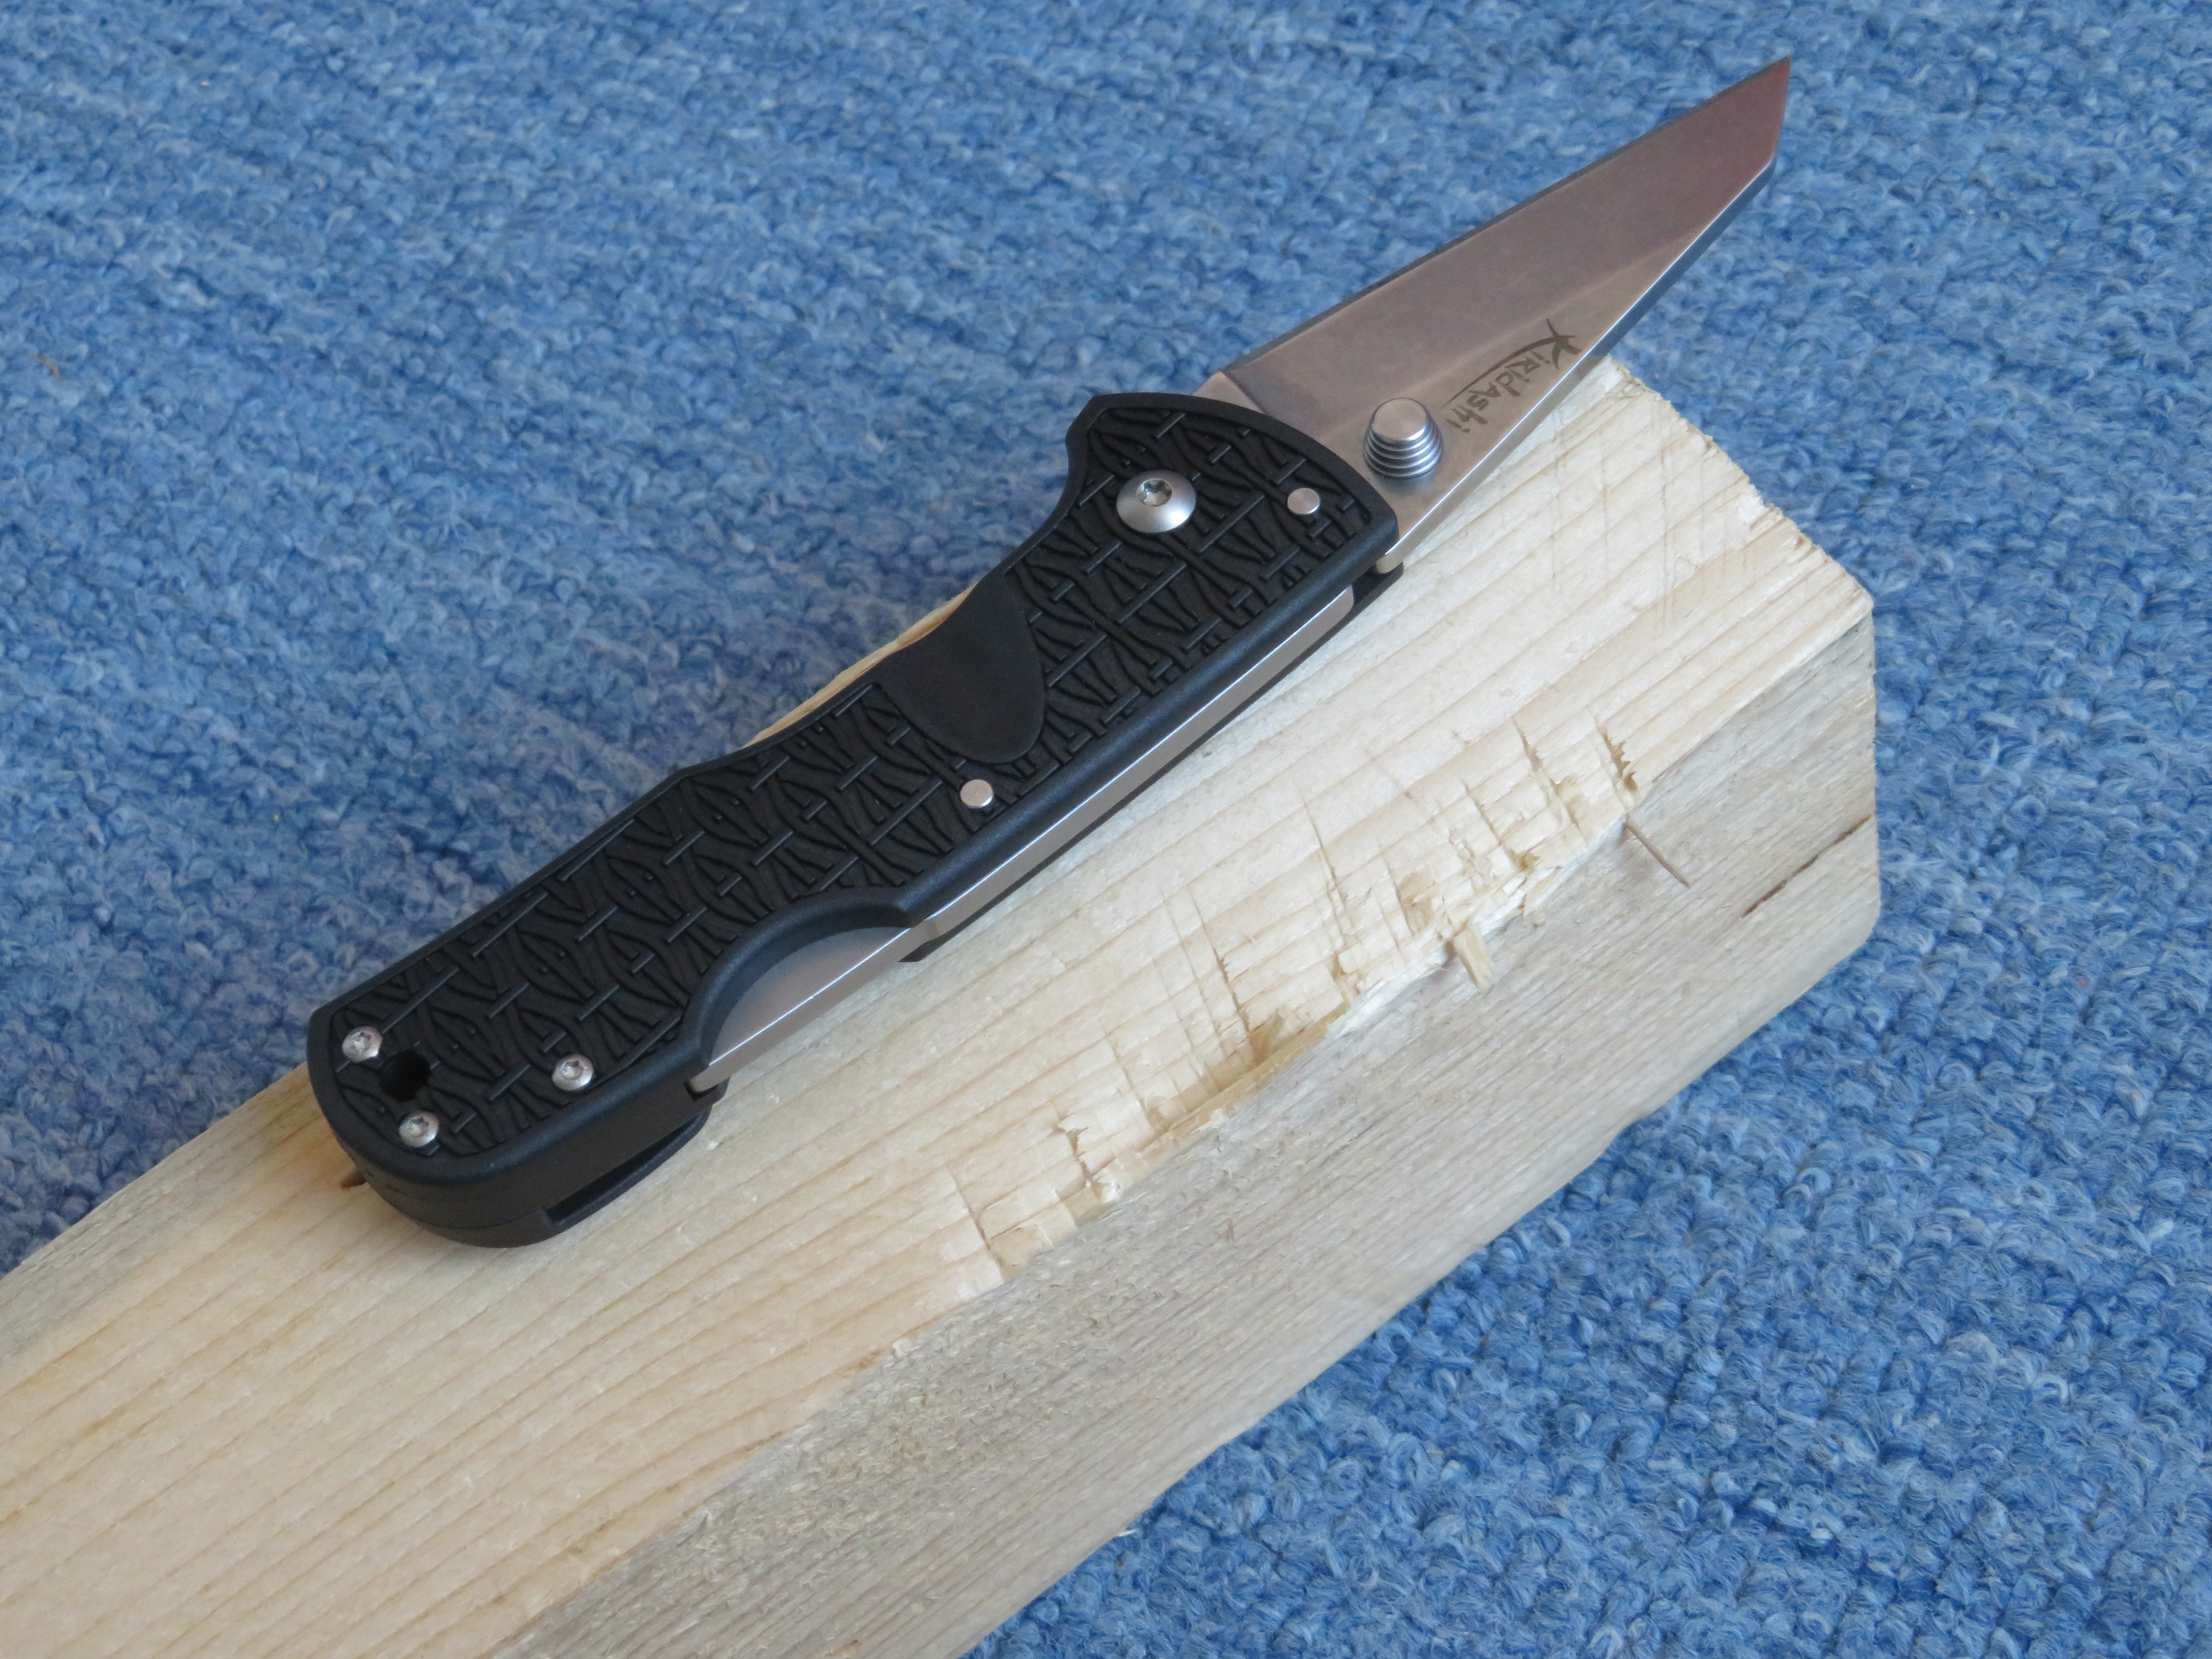 Test pojistky u zavíracího modelu Kiridashi dopadl výborně. Nůž nebyl ani po dvaceti silných úderech rubovou stranou čepele do dřevěného trámku nijak poškozen či dokonce zavřen.